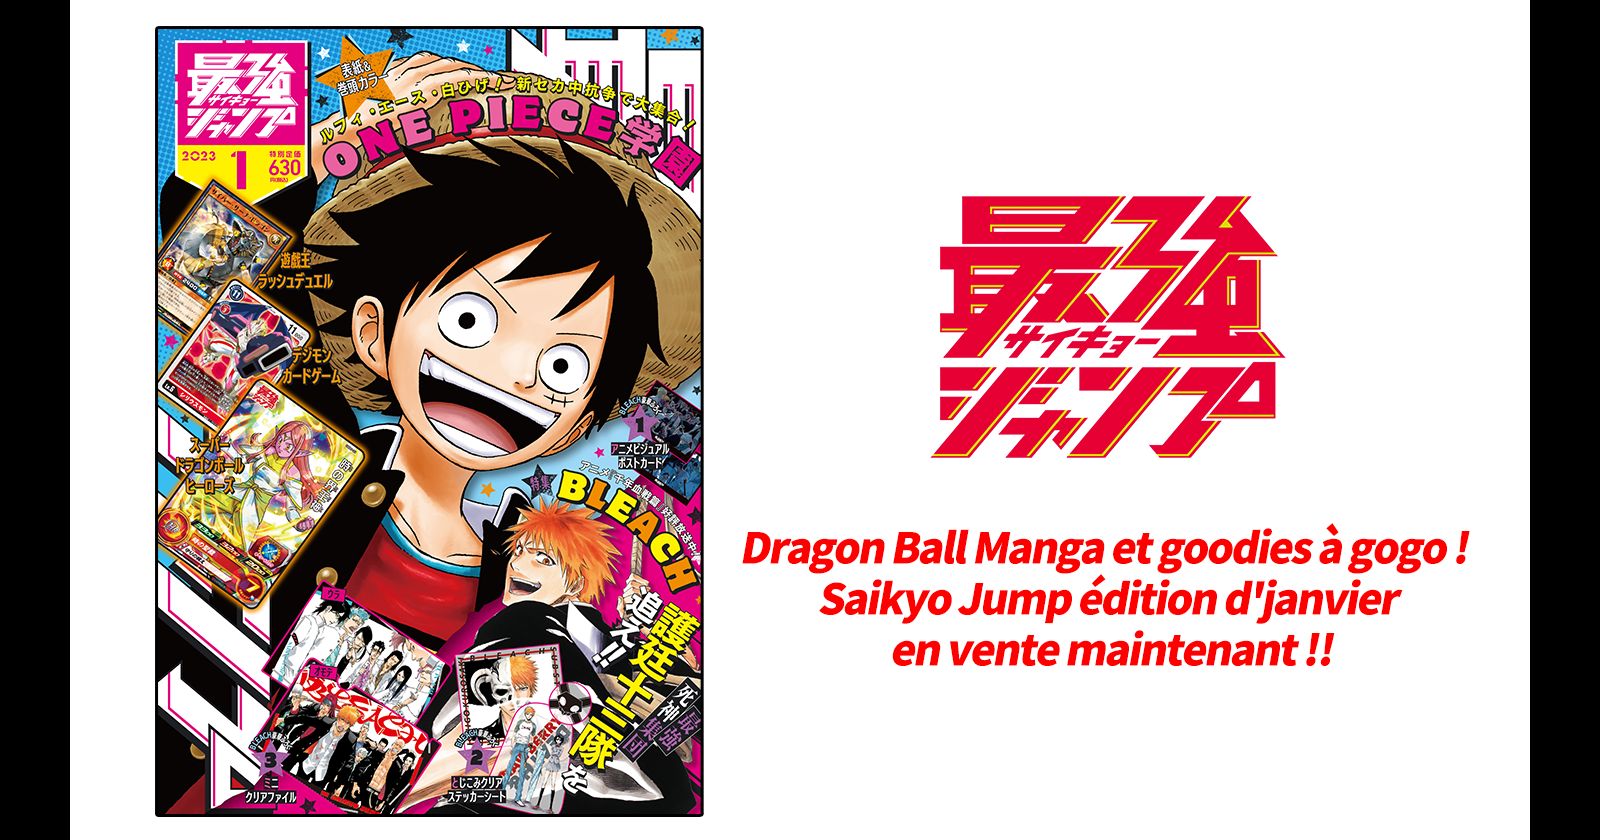 Le numéro spécial de janvier de Saikyo Jump, actuellement en vente, regorge de fourrures et de mangas "Dragon Ball" !